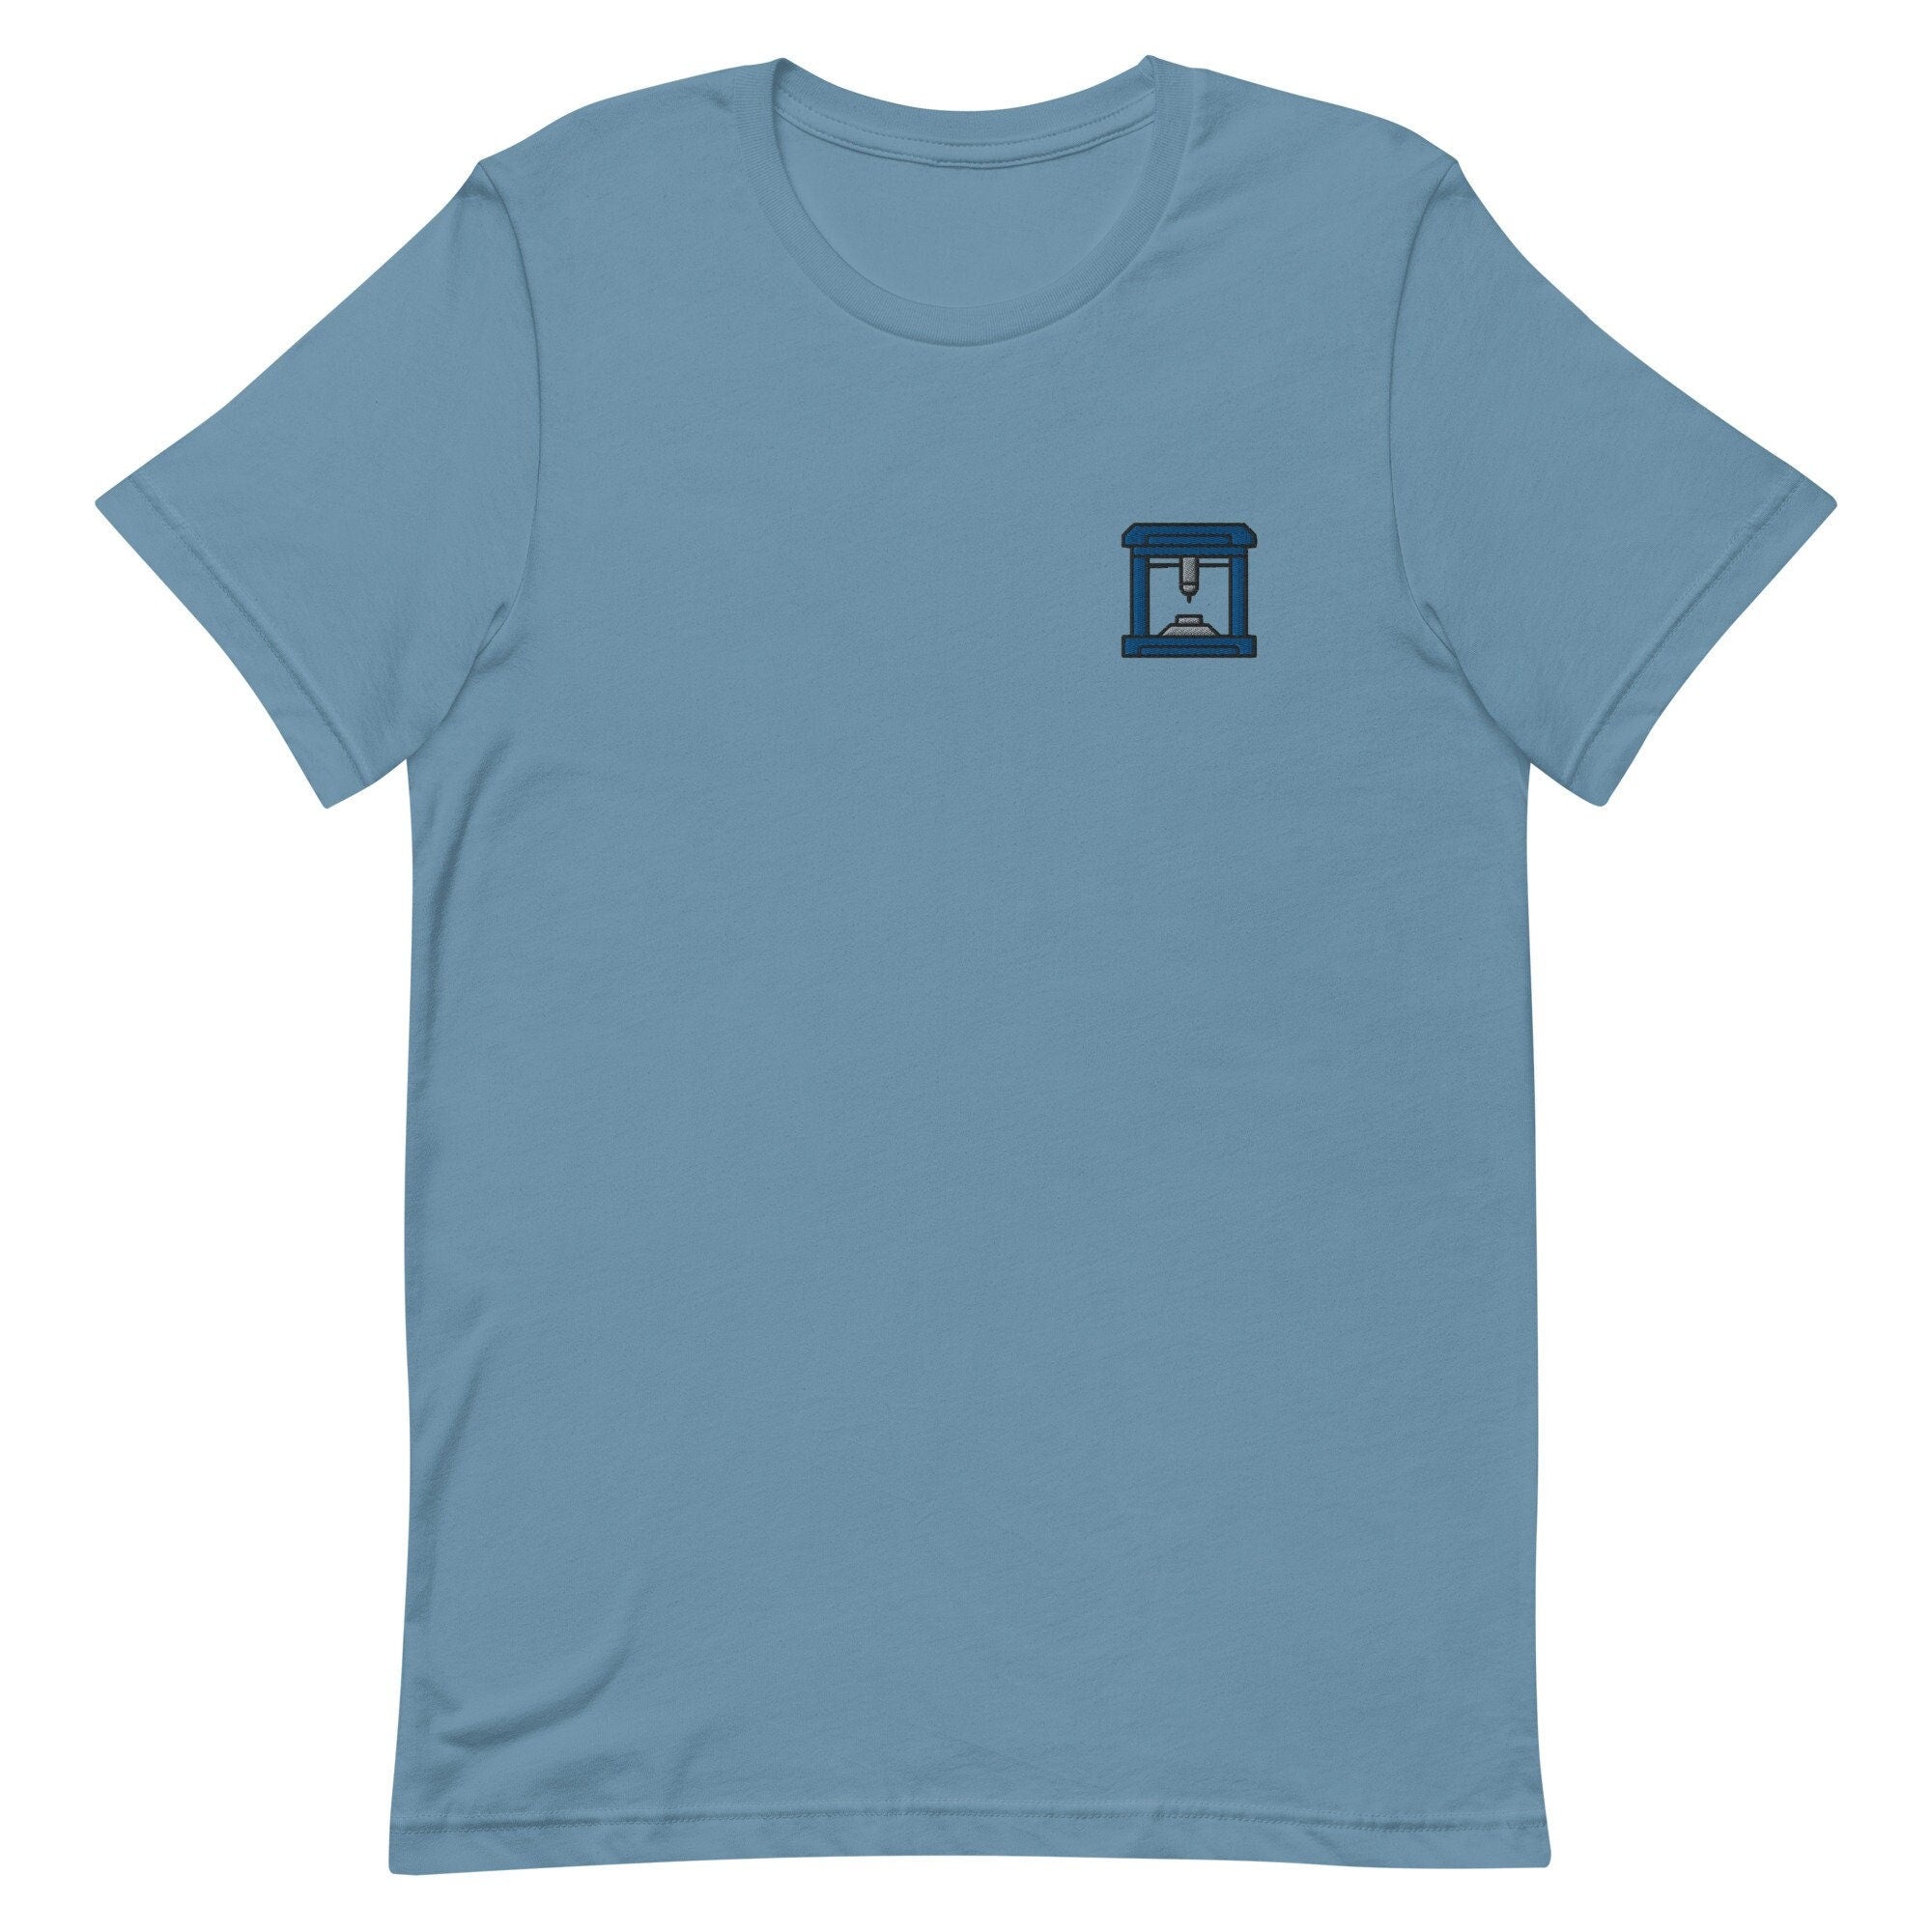 3D Printer Premium Men's T-Shirt, Embroidered Men's T-Shirt Gift for Boyfriend, Men's Short Sleeve Shirt - Multiple Colors